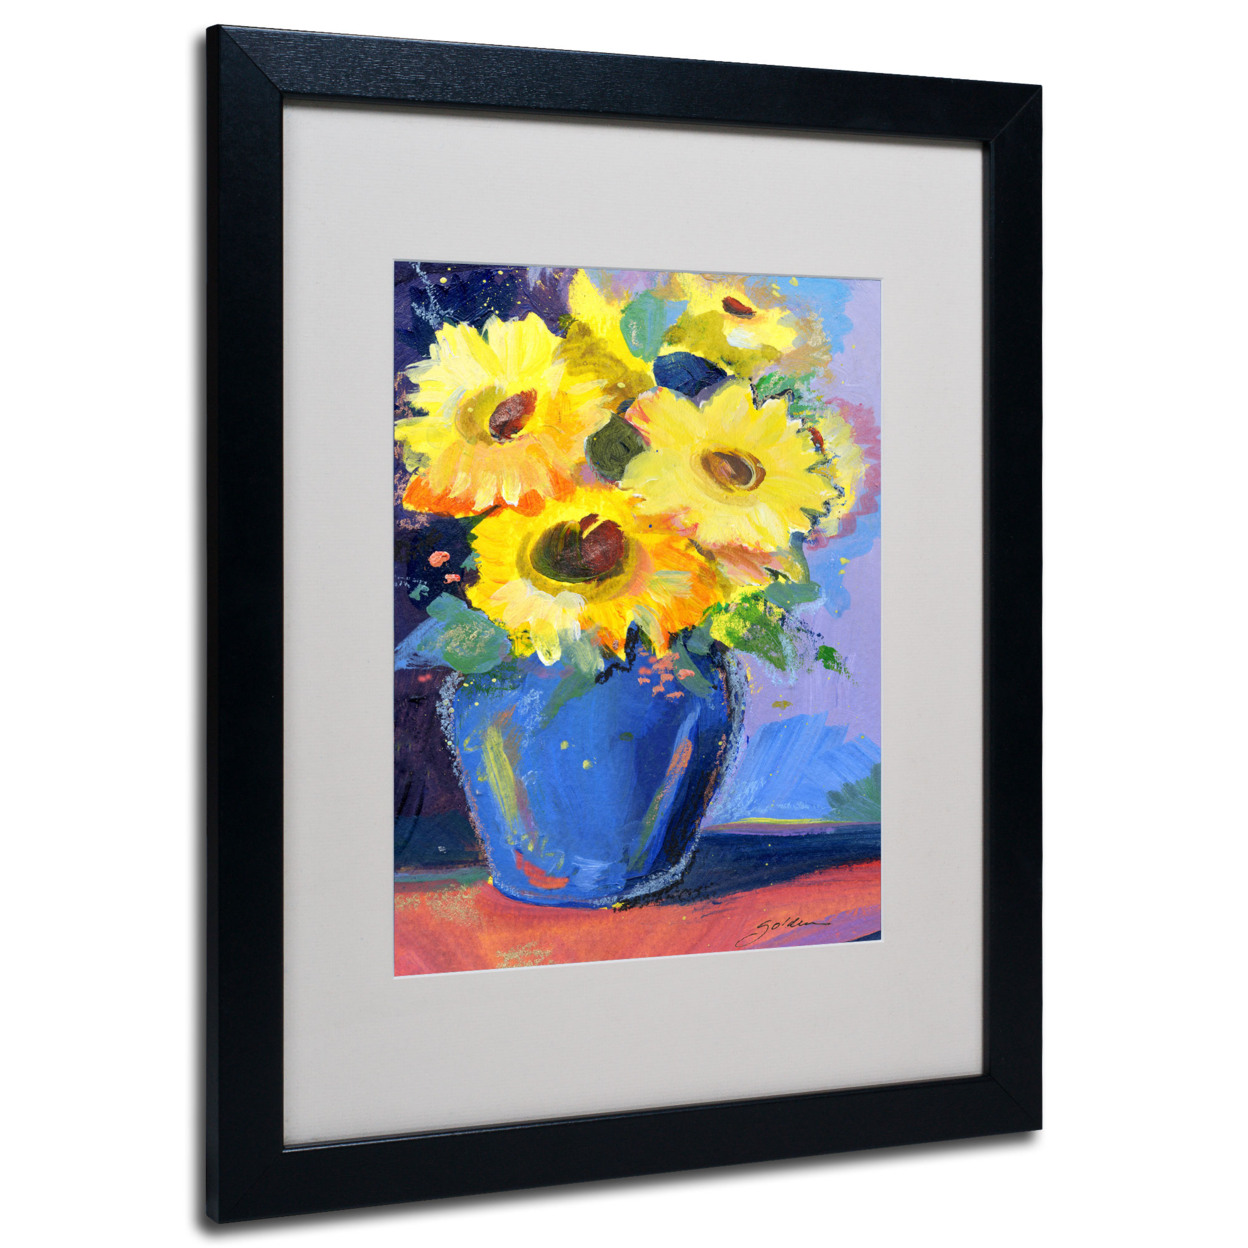 Sheila Golden 'Sunflowers II' Black Wooden Framed Art 18 X 22 Inches